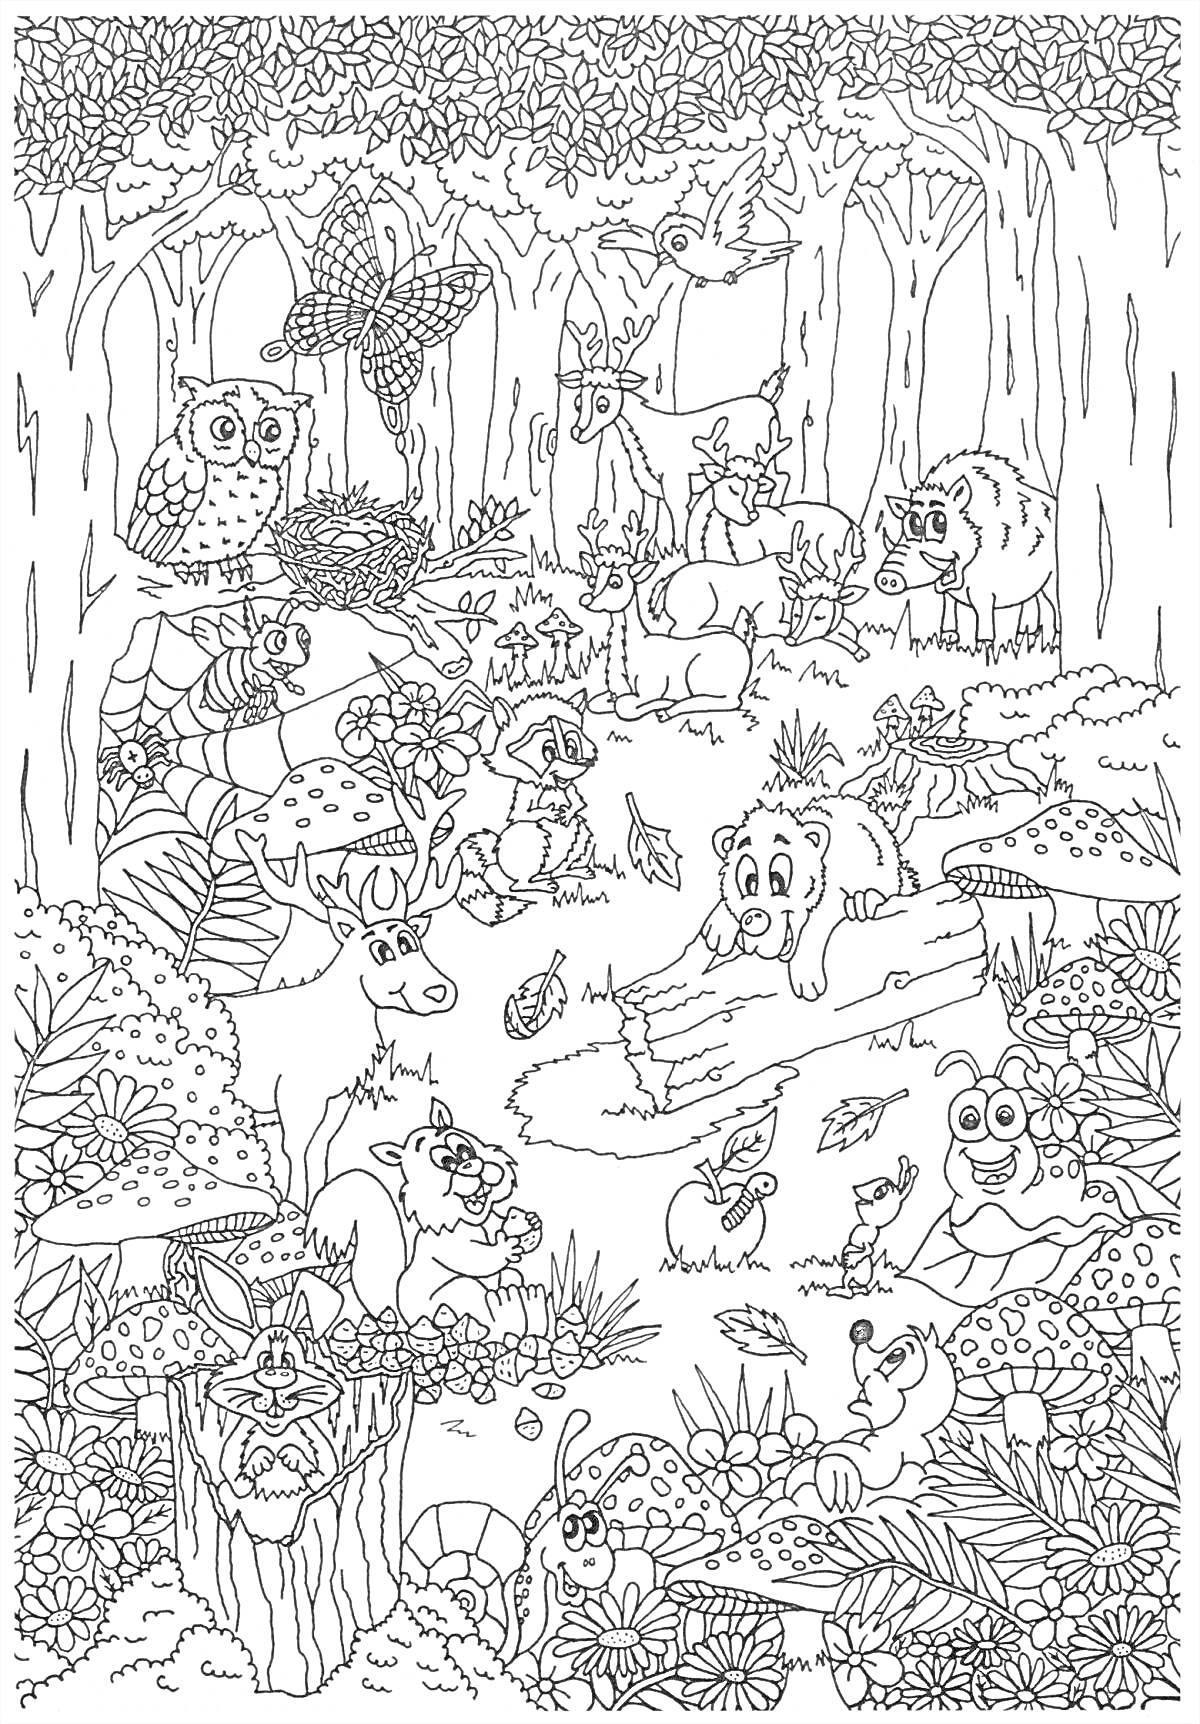 На раскраске изображено: Лес, Животные, Сова, Олень, Медведь, Зайцы, Еж, Улитка, Листья, Деревья, Грибы, Паутина